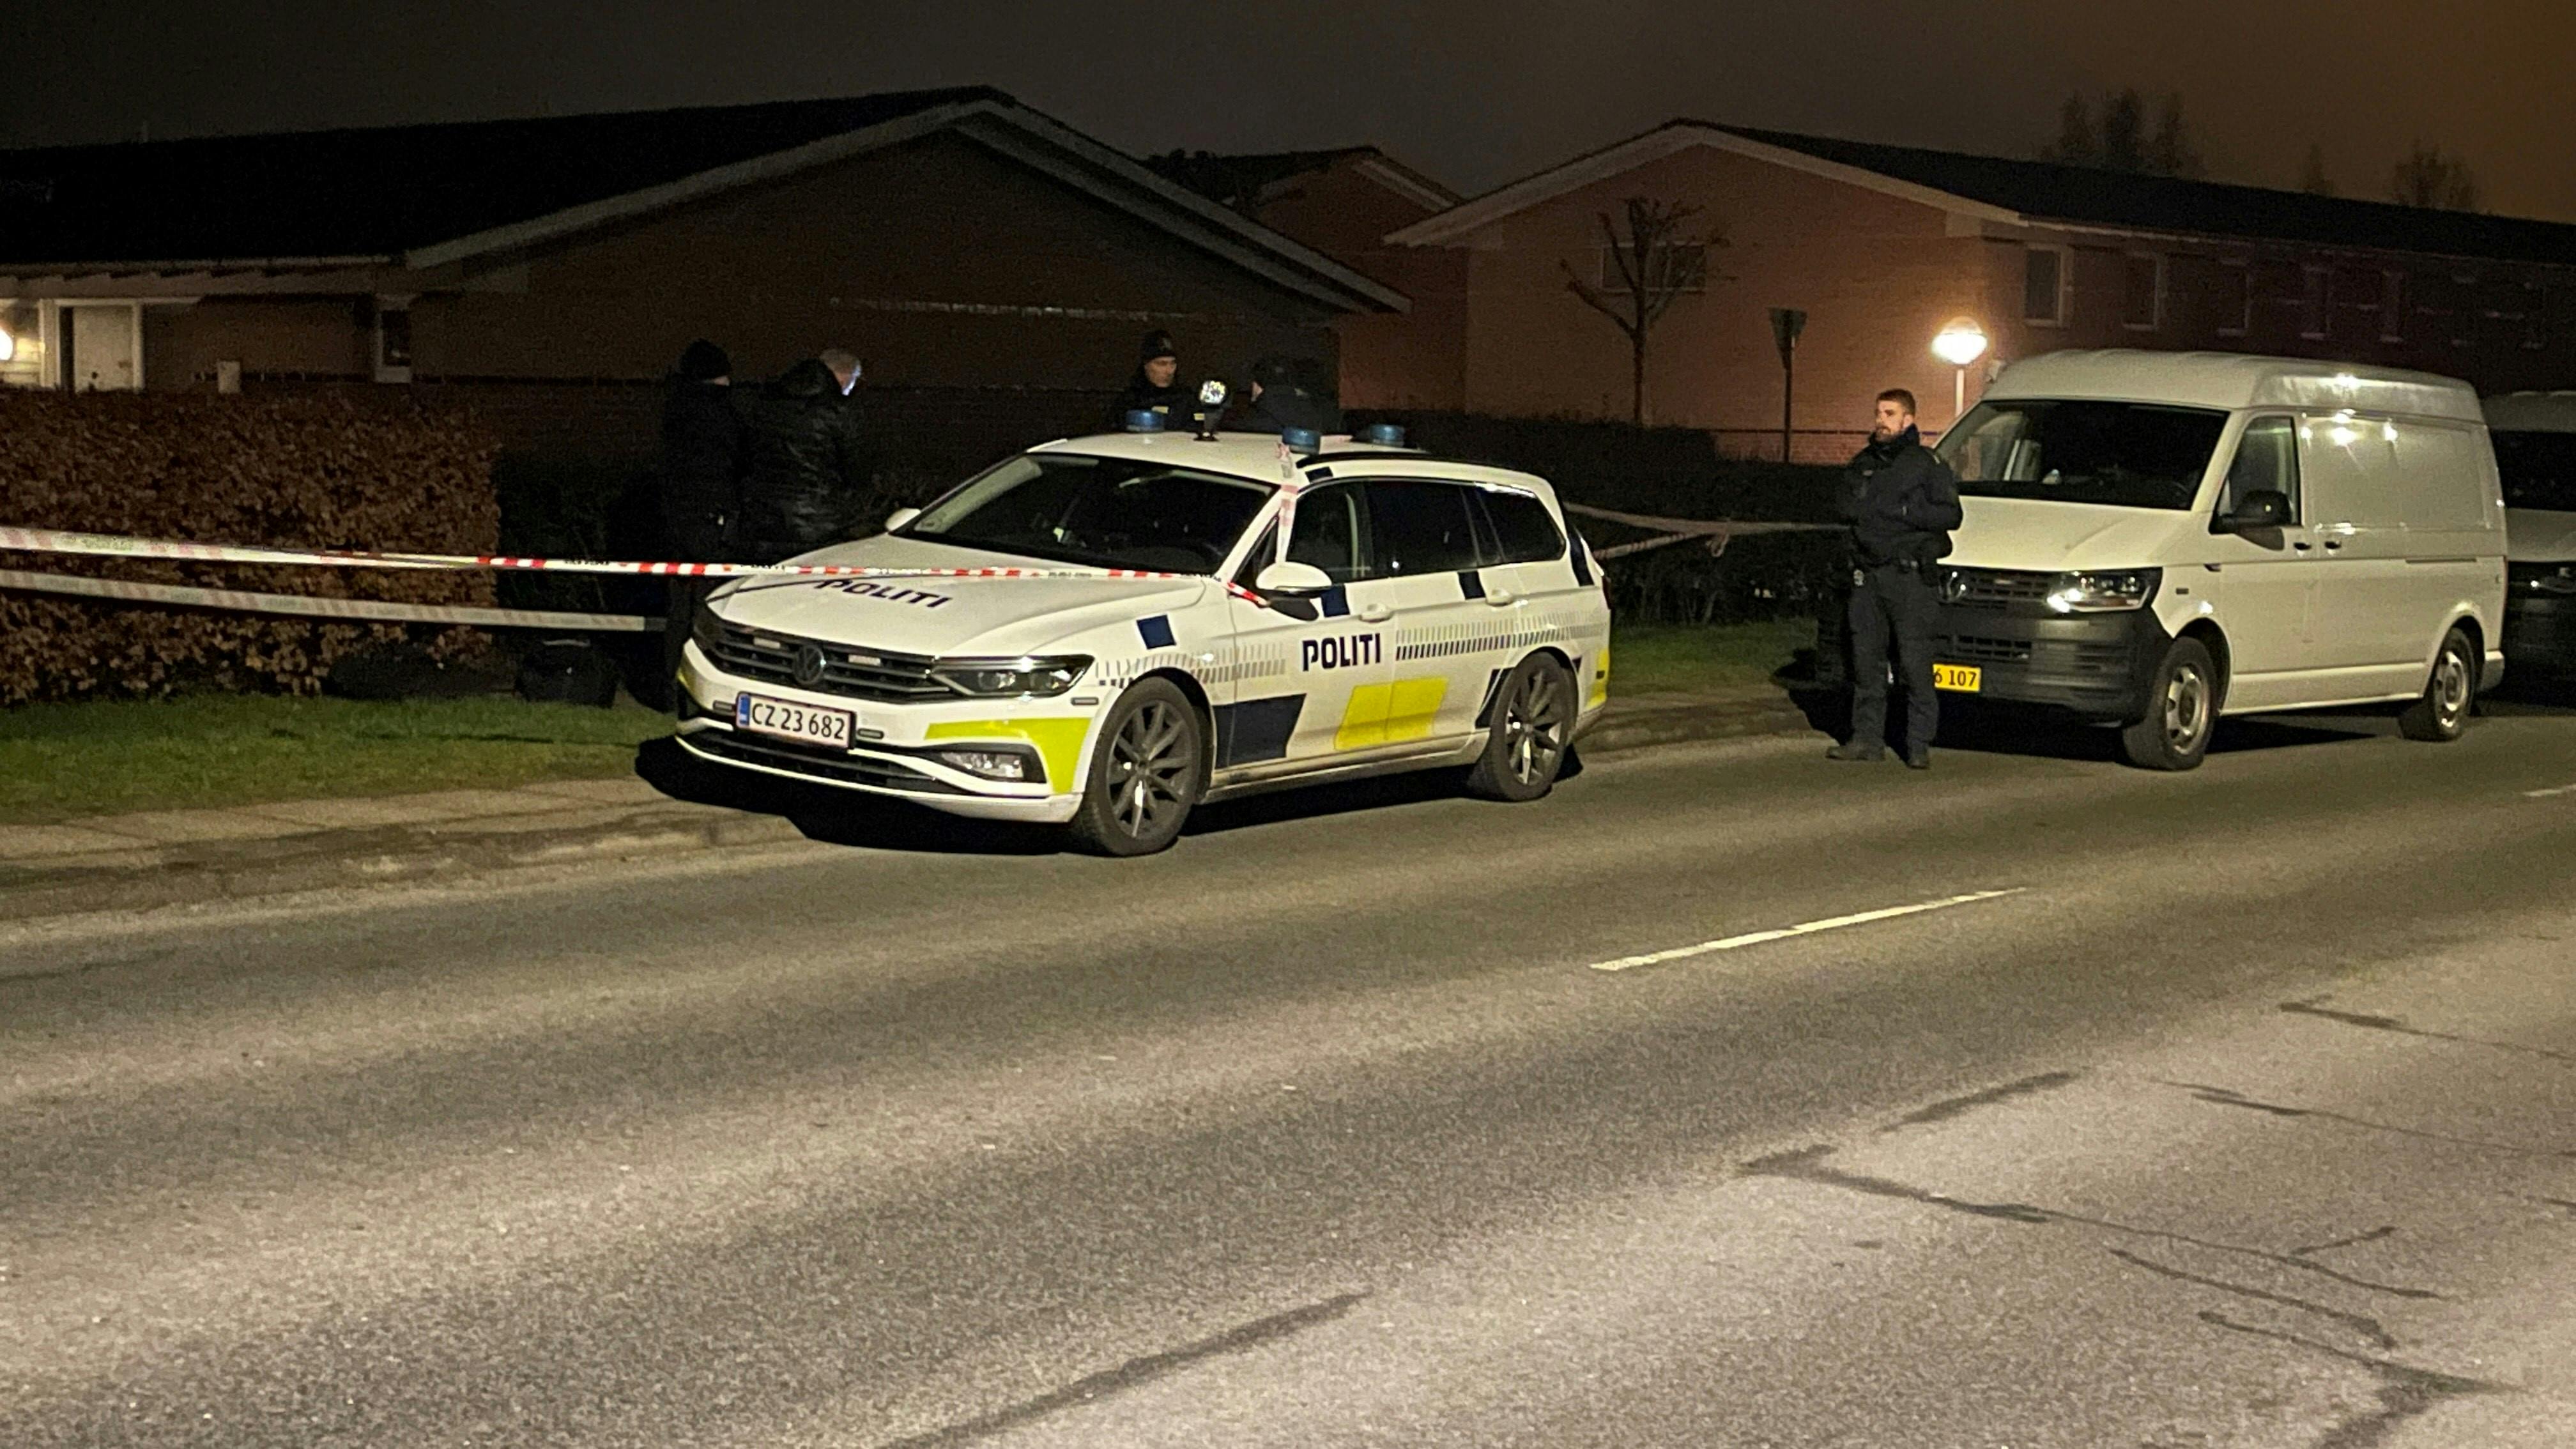 Politiet rykkede onsdag aften ud til en adresse i Sabro, hvor en 65-årig kvinde blev fundet dræbt. Et 44-årigt familiemedlem er anholdt og sigtet for drab.